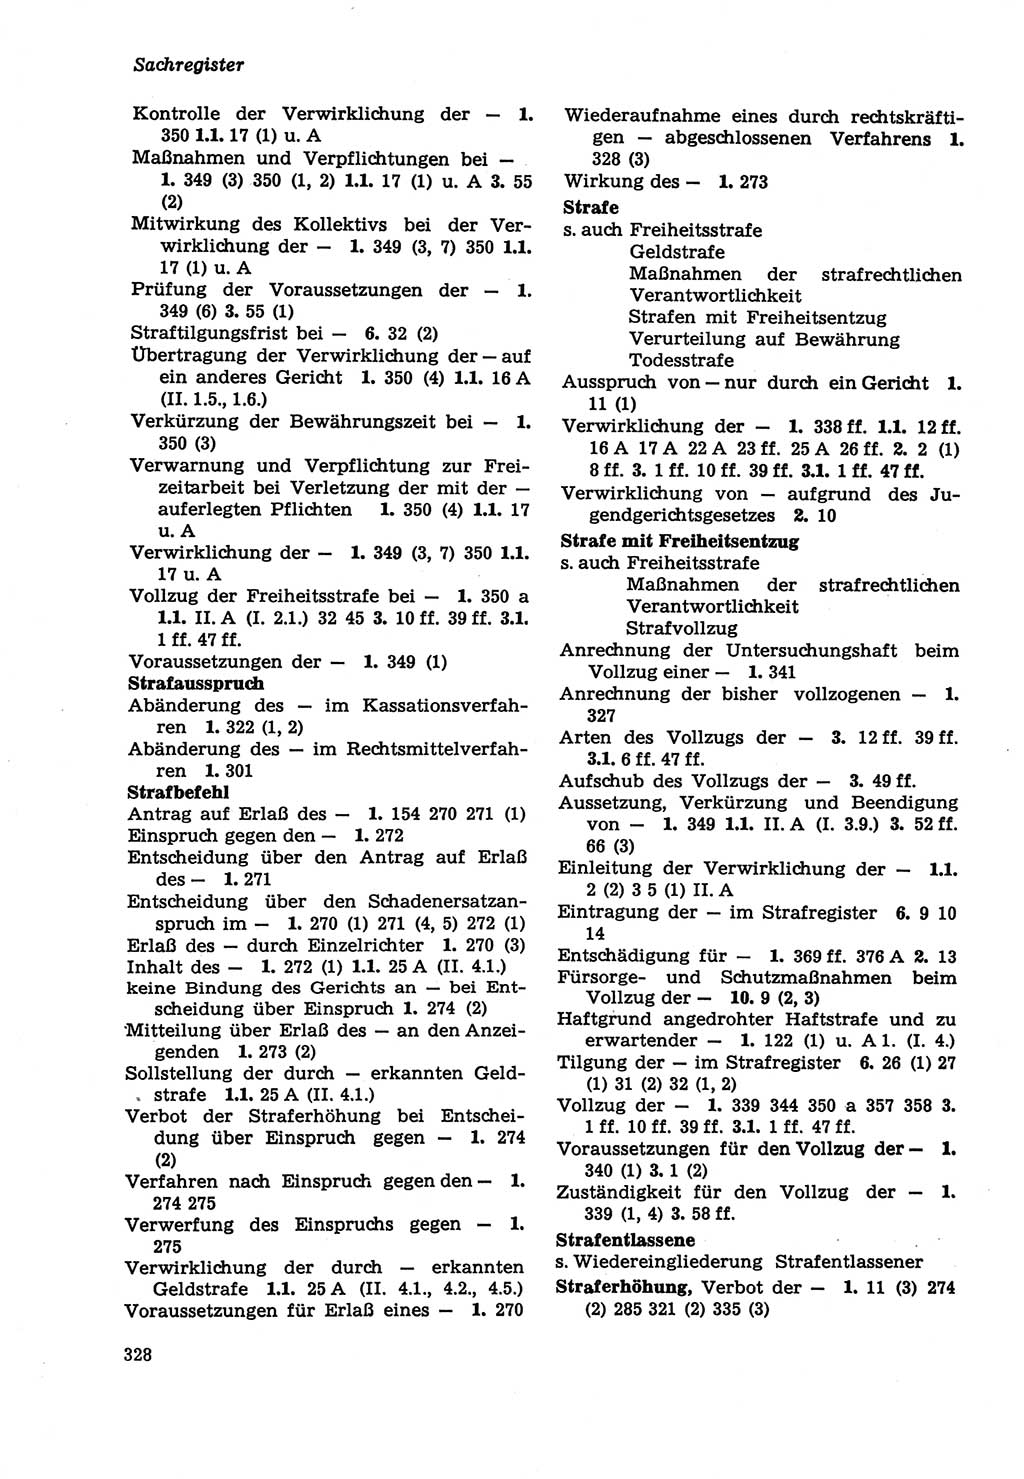 Strafprozeßordnung (StPO) der Deutschen Demokratischen Republik (DDR) sowie angrenzende Gesetze und Bestimmungen 1979, Seite 328 (StPO DDR Ges. Best. 1979, S. 328)